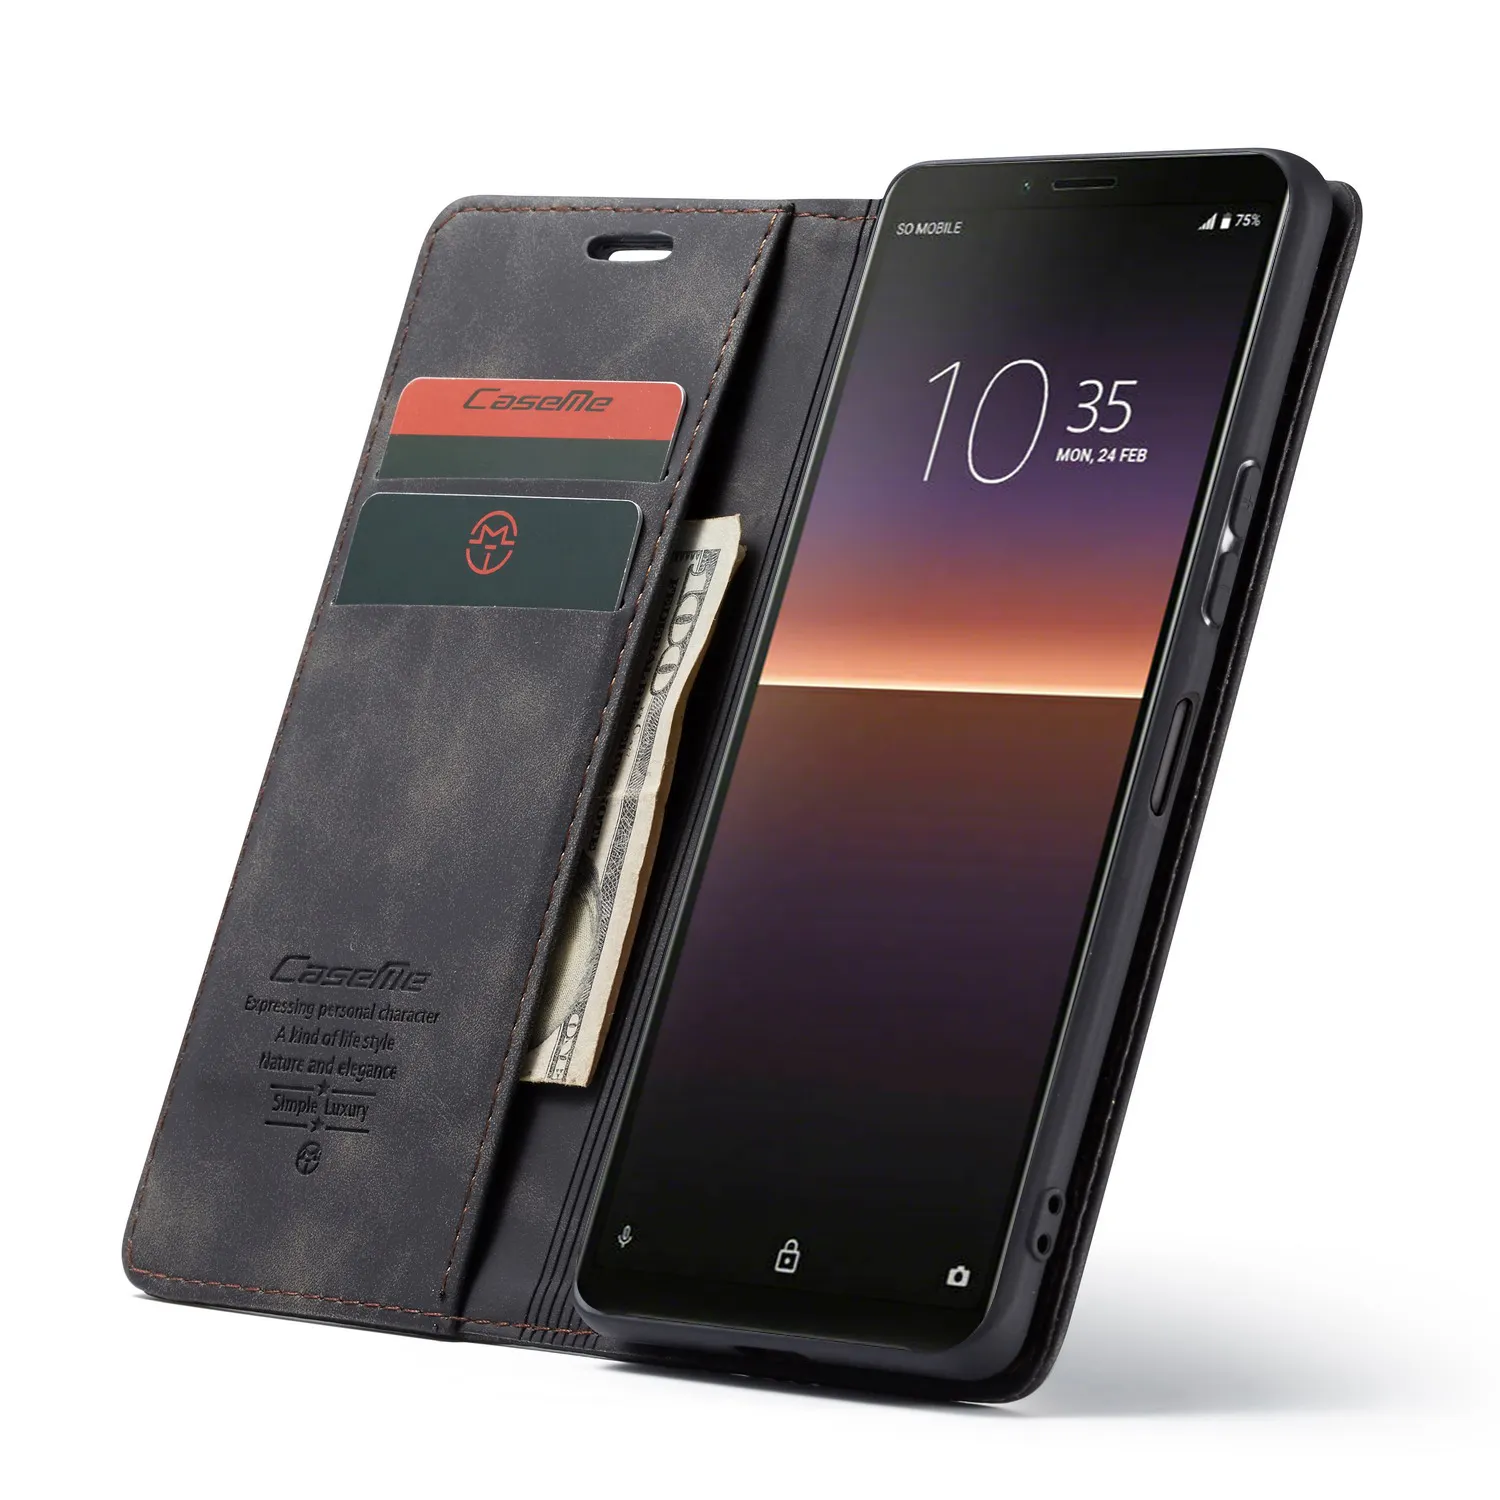 CaseMe 2020 новый дизайн для LG G6 G7 G8 G5 V20 V10 чехол Аксессуары для мобильного телефона чехол в стиле ретро Красочный для Sony Xperia 1 II чехол